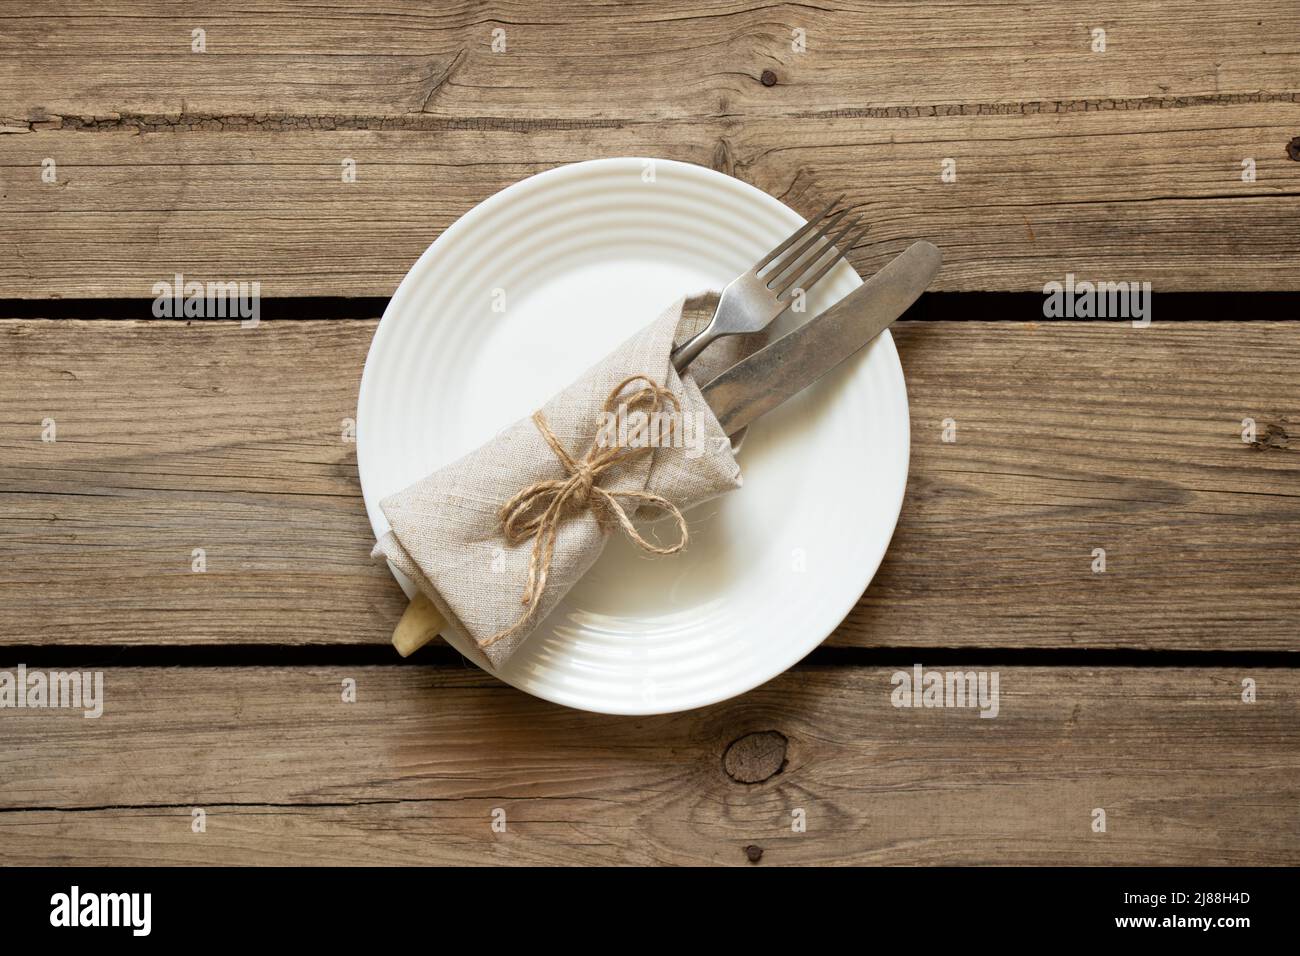 Une assiette blanche et une fourchette avec un couteau se trouvent sur une ancienne table en bois dans la cuisine à la maison, affaires de restaurant, appareils de cuisine Banque D'Images